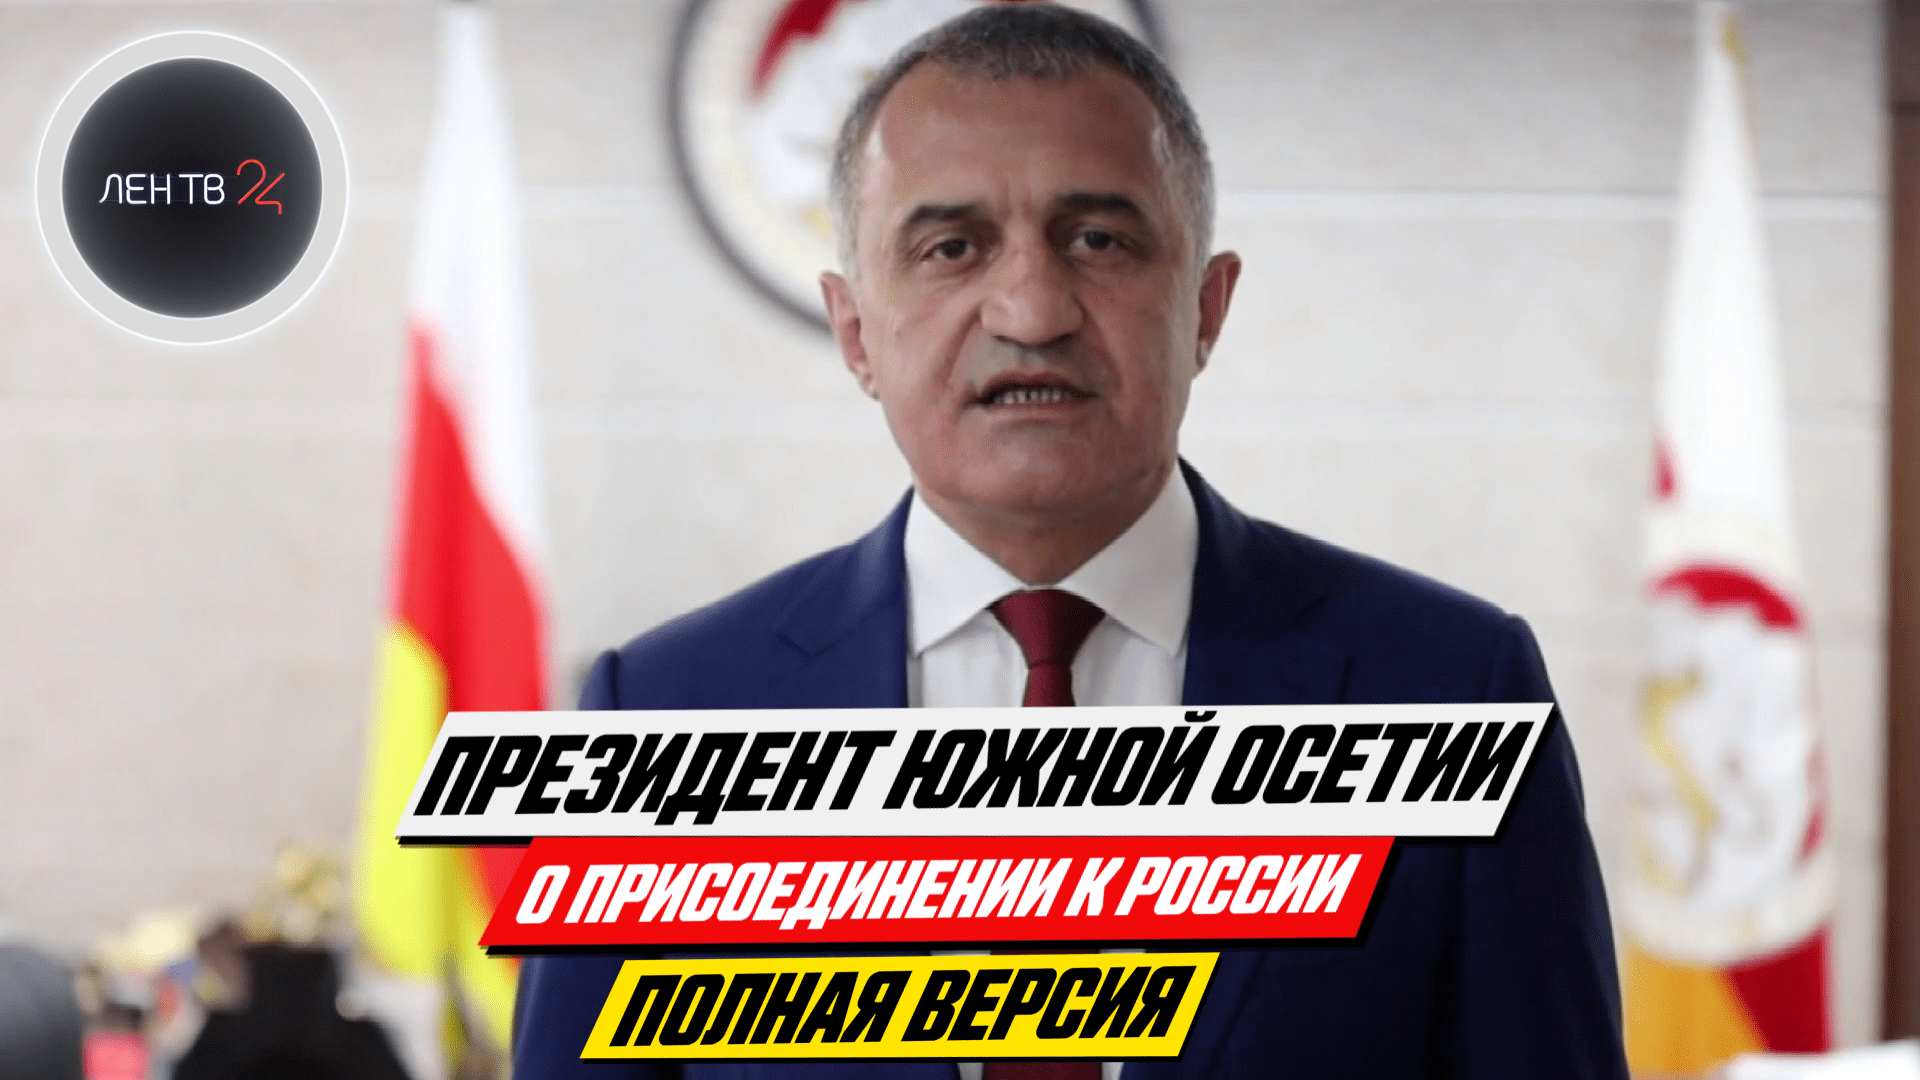 Президент Южной Осетии о присоединении к России: полное видео | Анатолий Бибилов заявление